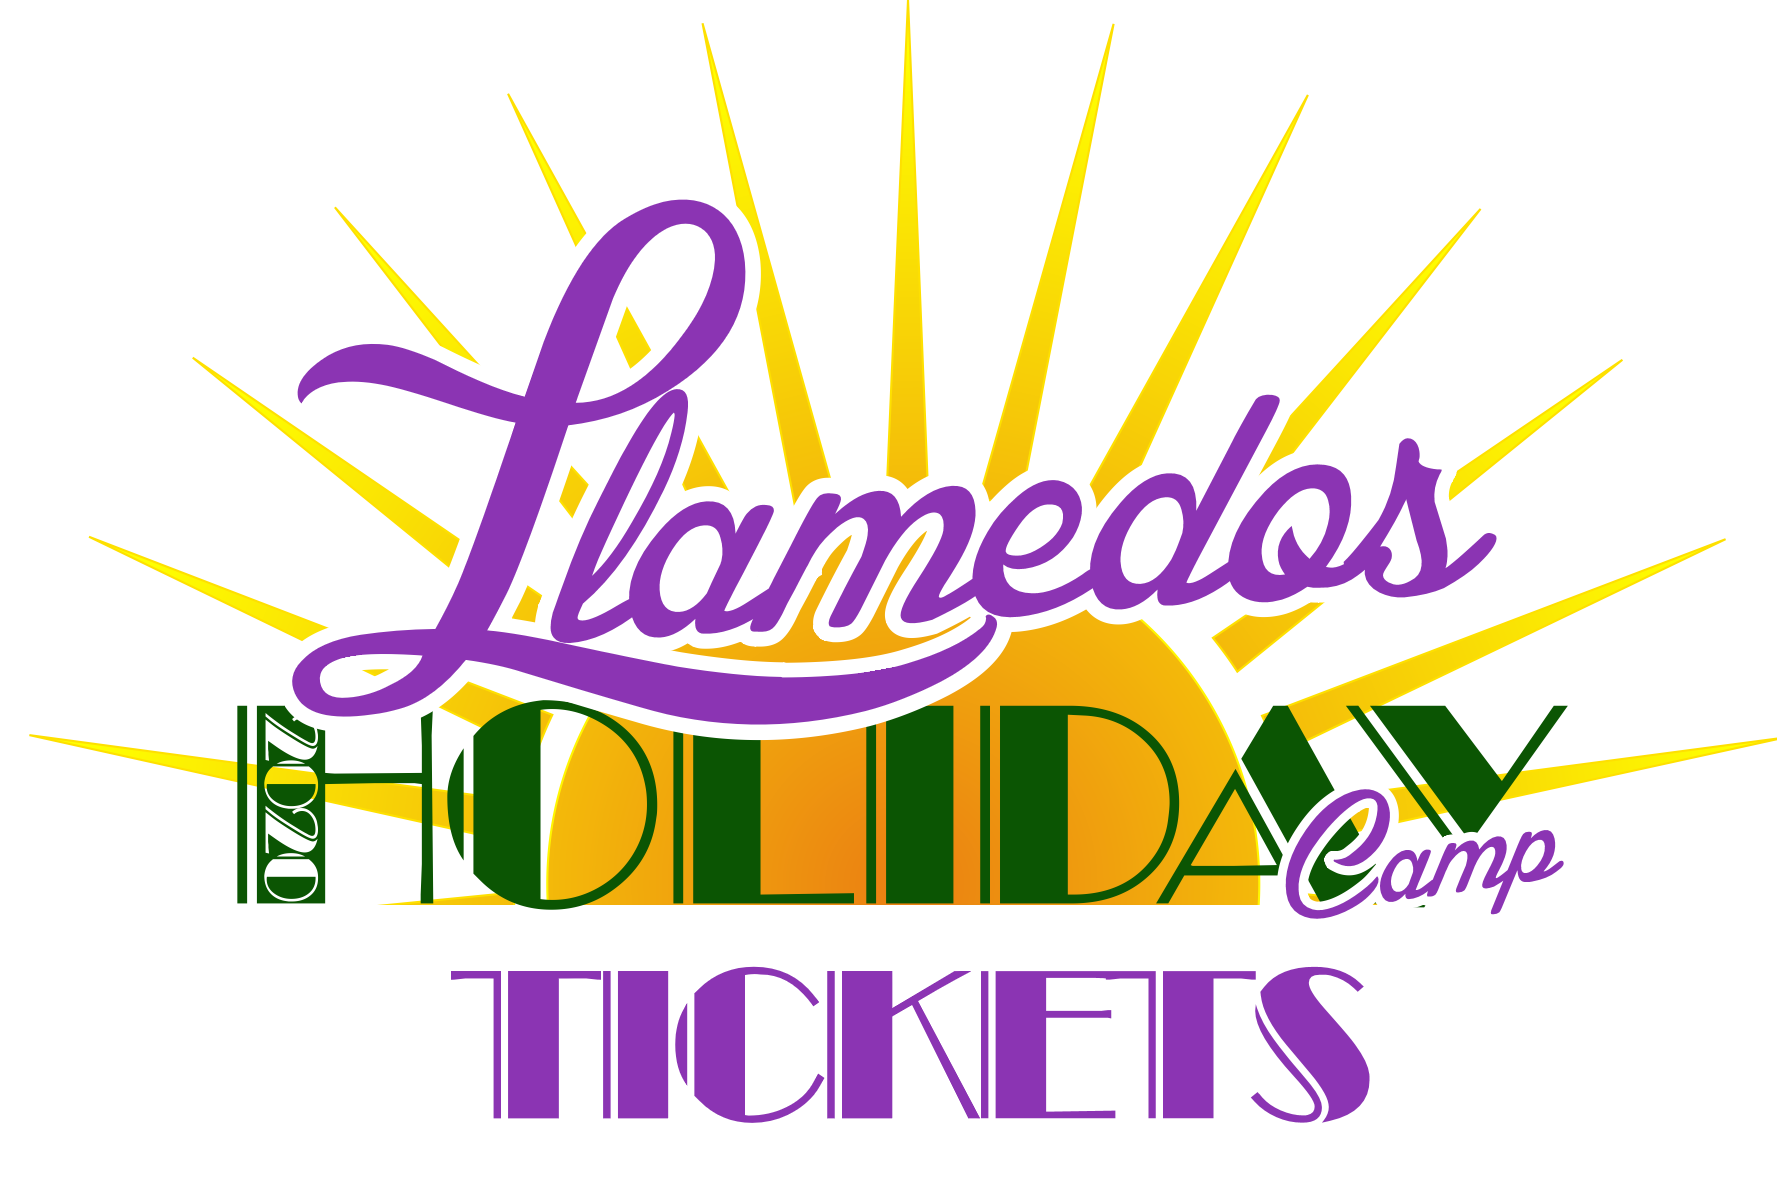 Llamedos Holiday Camp Tickets